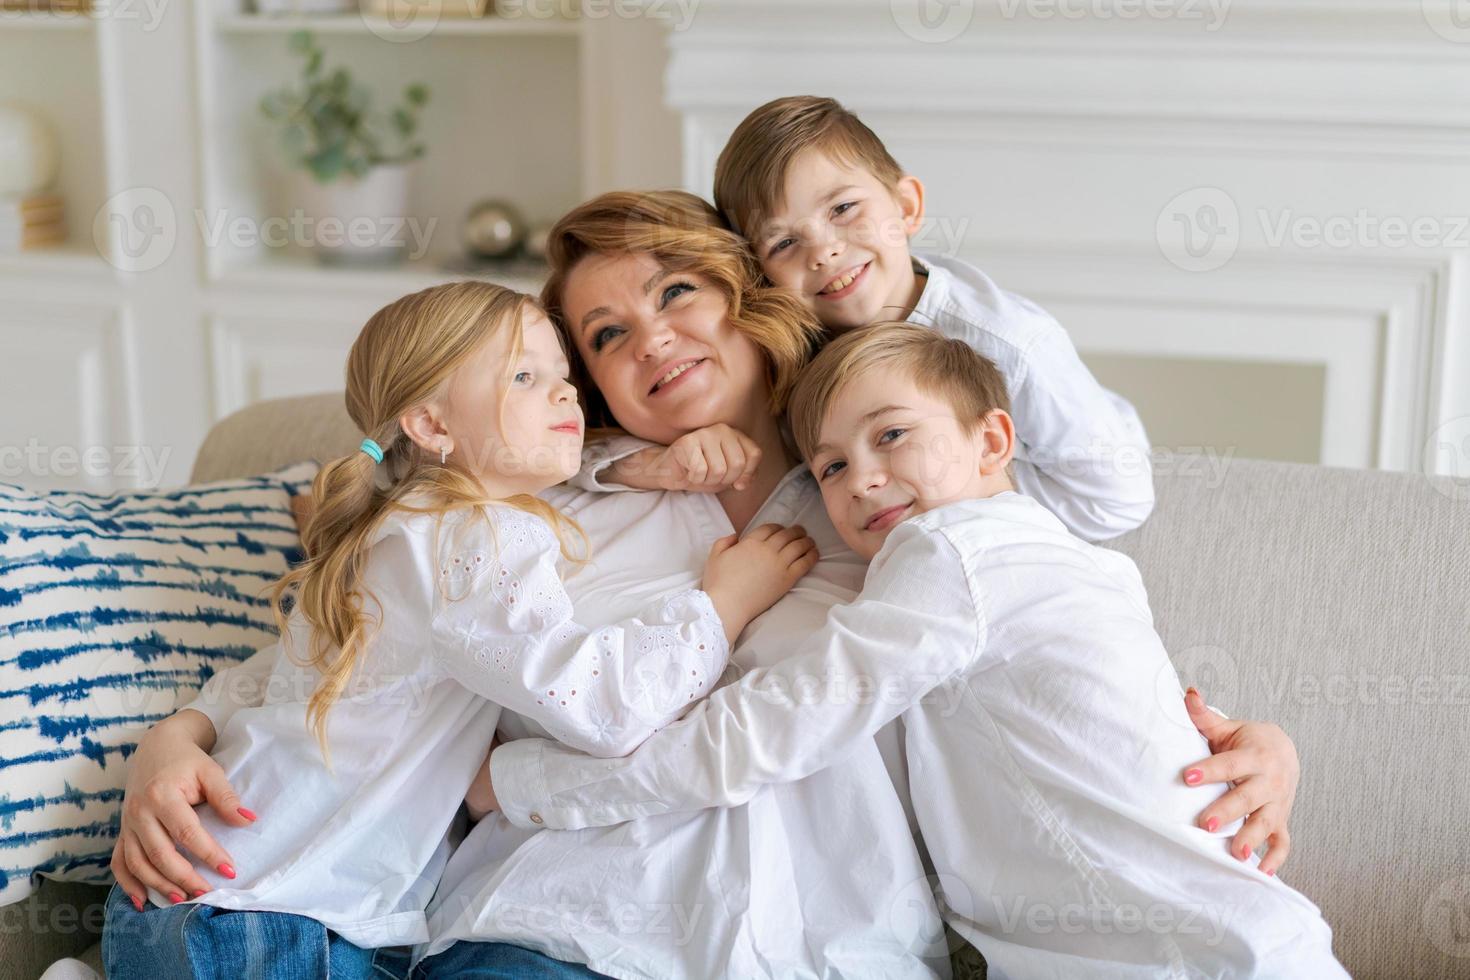 lindos filhos abraçando, mãe animada mostrando amor e carinho, mãe sorridente foto